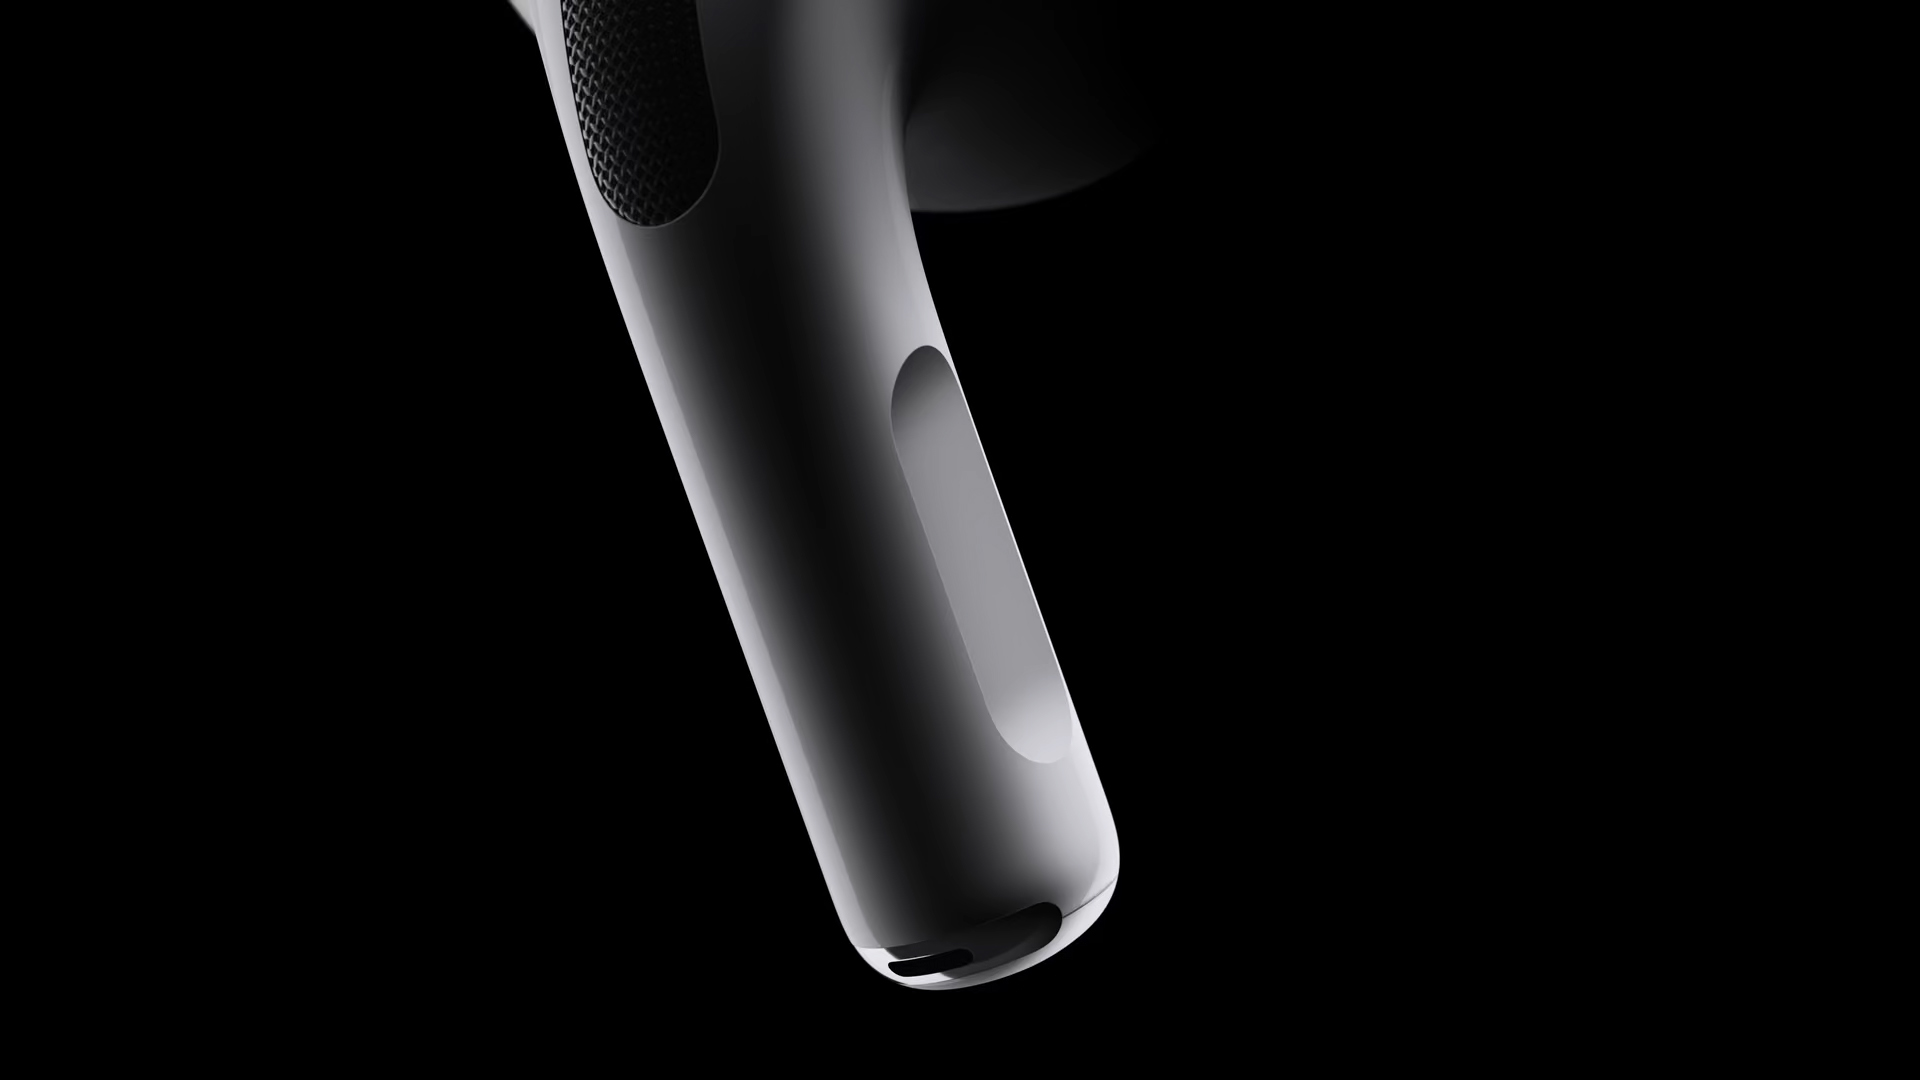 Duelo en la gama alta de auriculares de Apple: comparamos los nuevos AirPods  Pro 2 con